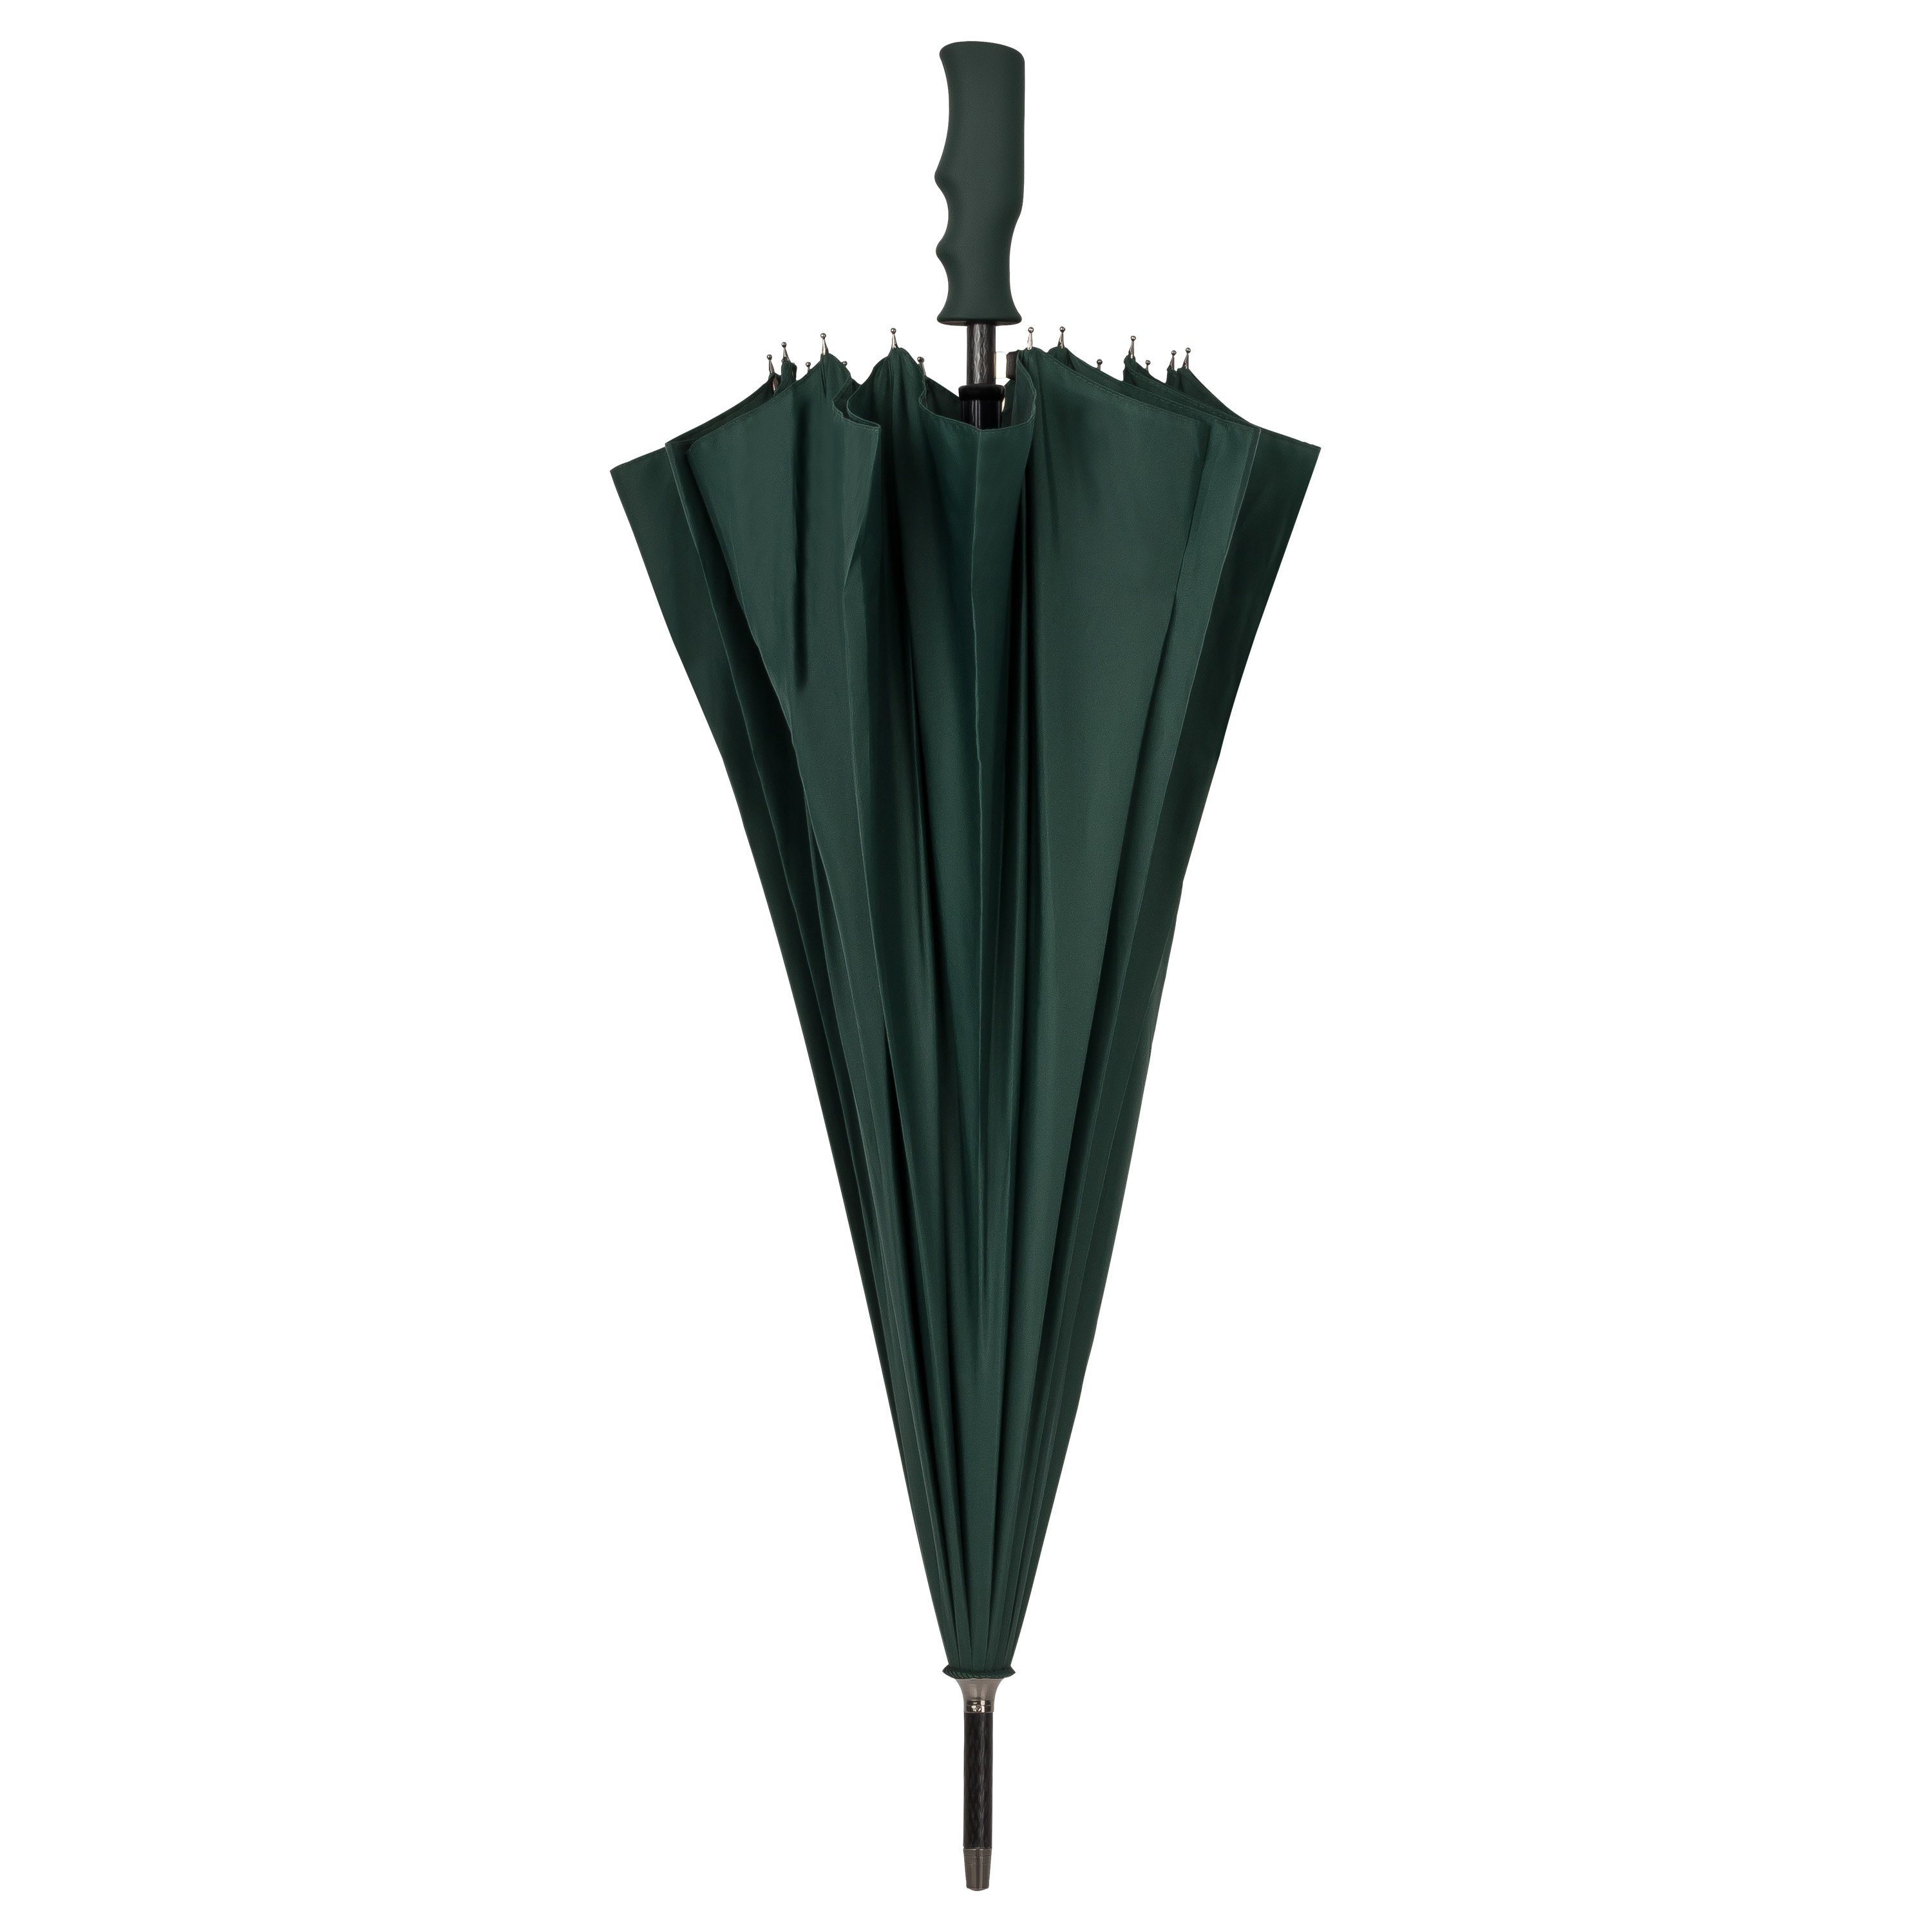 Blau Regenschirm XL 115cm automatischer Taschenschirm Auf-Zu-Automatik sturmsicher Doppeldach Windproof Partnerschirm groß stabil Farbe 